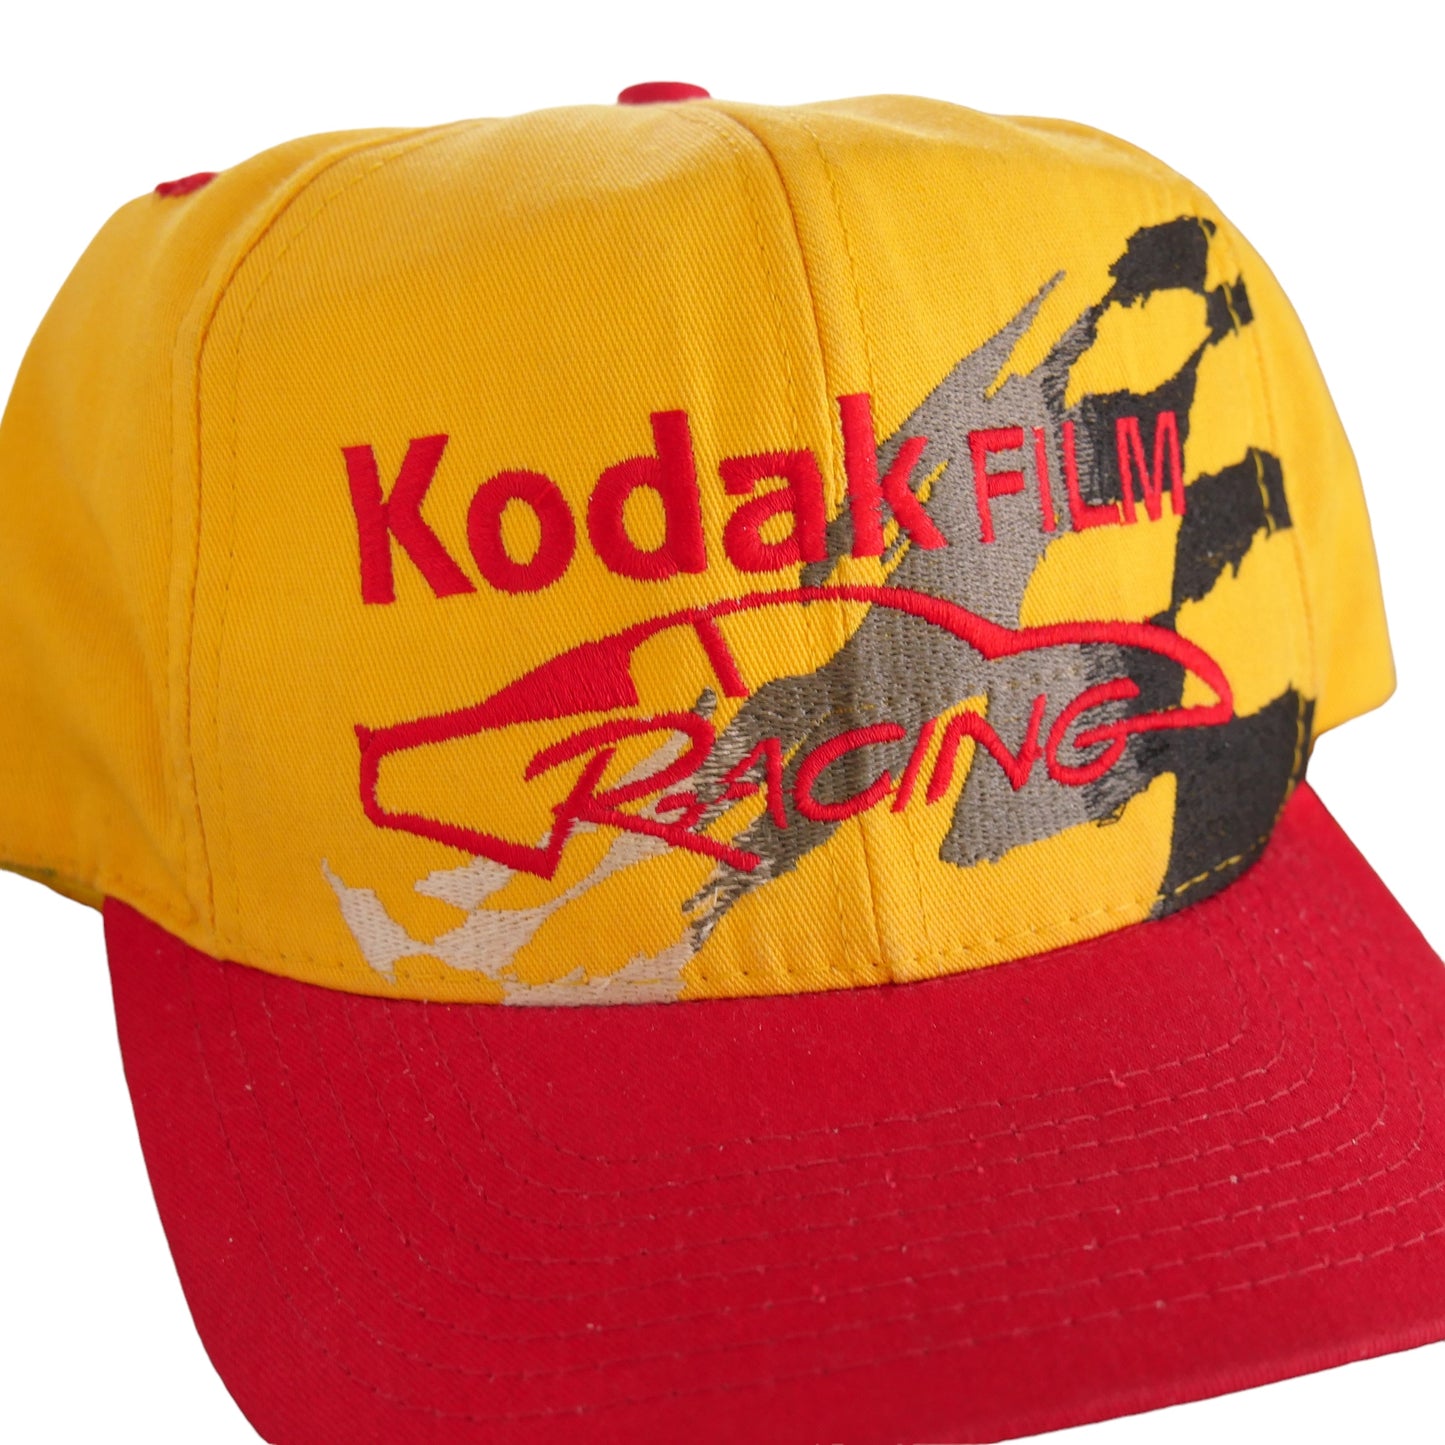 Kodak Film Racing Snapback